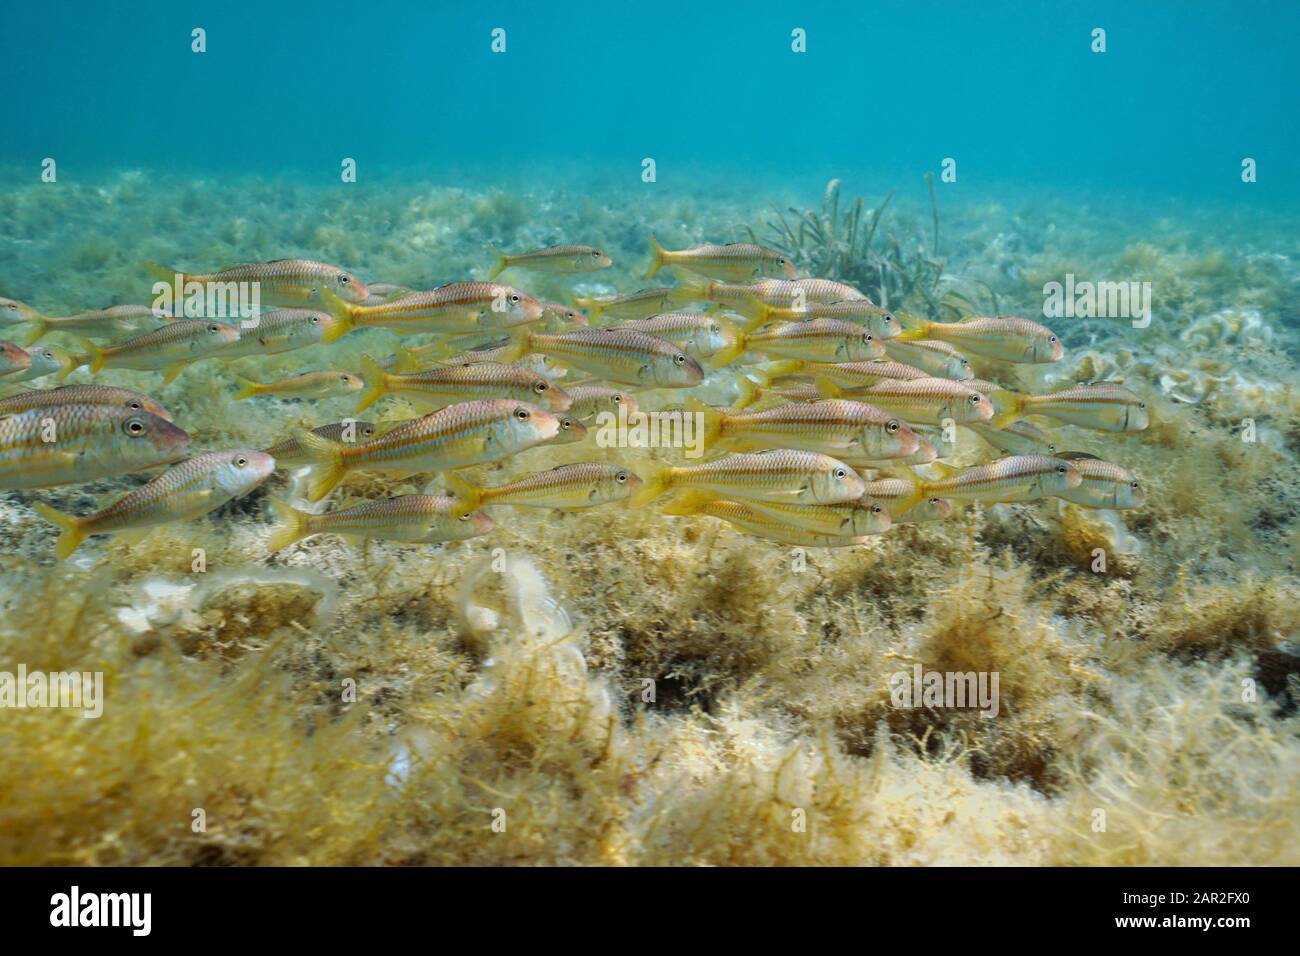 School of fish, striped red mullet (Mullus surmuletus) underwater in the Mediterranean sea, Spain, Costa Brava, Cadaques, Catalonia, Cap de Creus Stock Photo